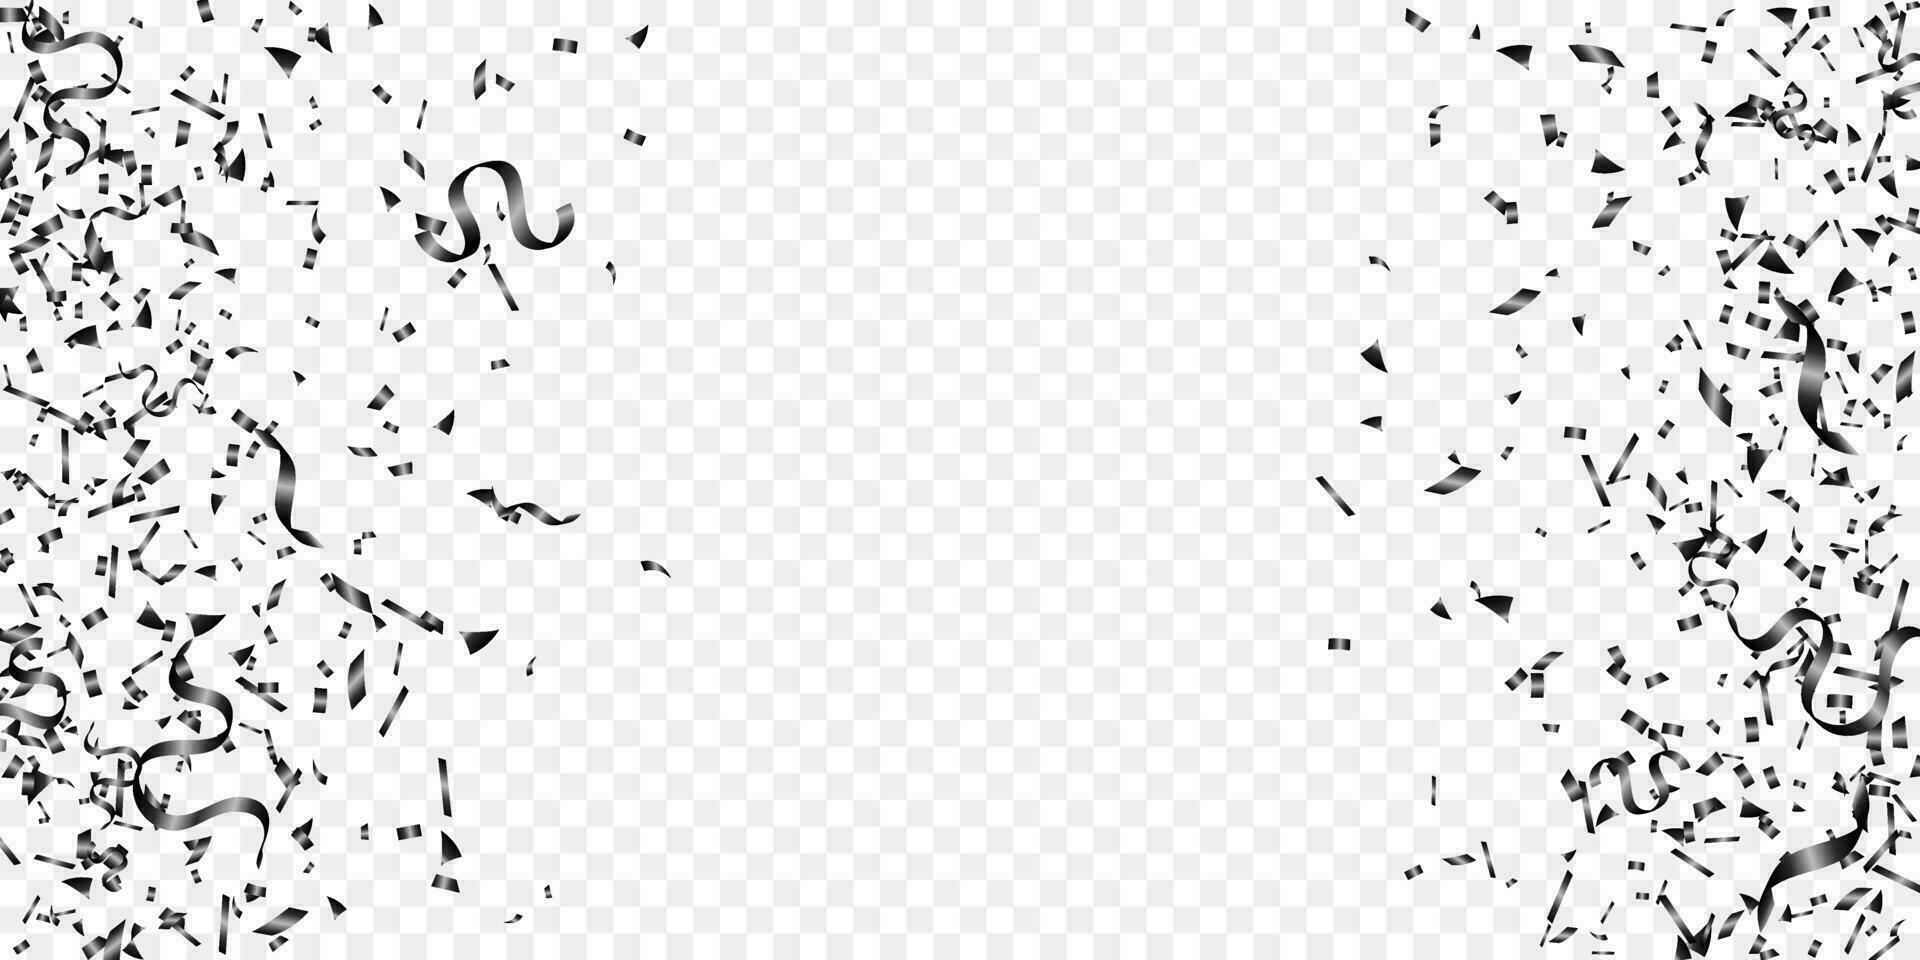 zwart confetti en lint voor viering, evenement, verjaardag en halloween partij achtergrond vector illustratie